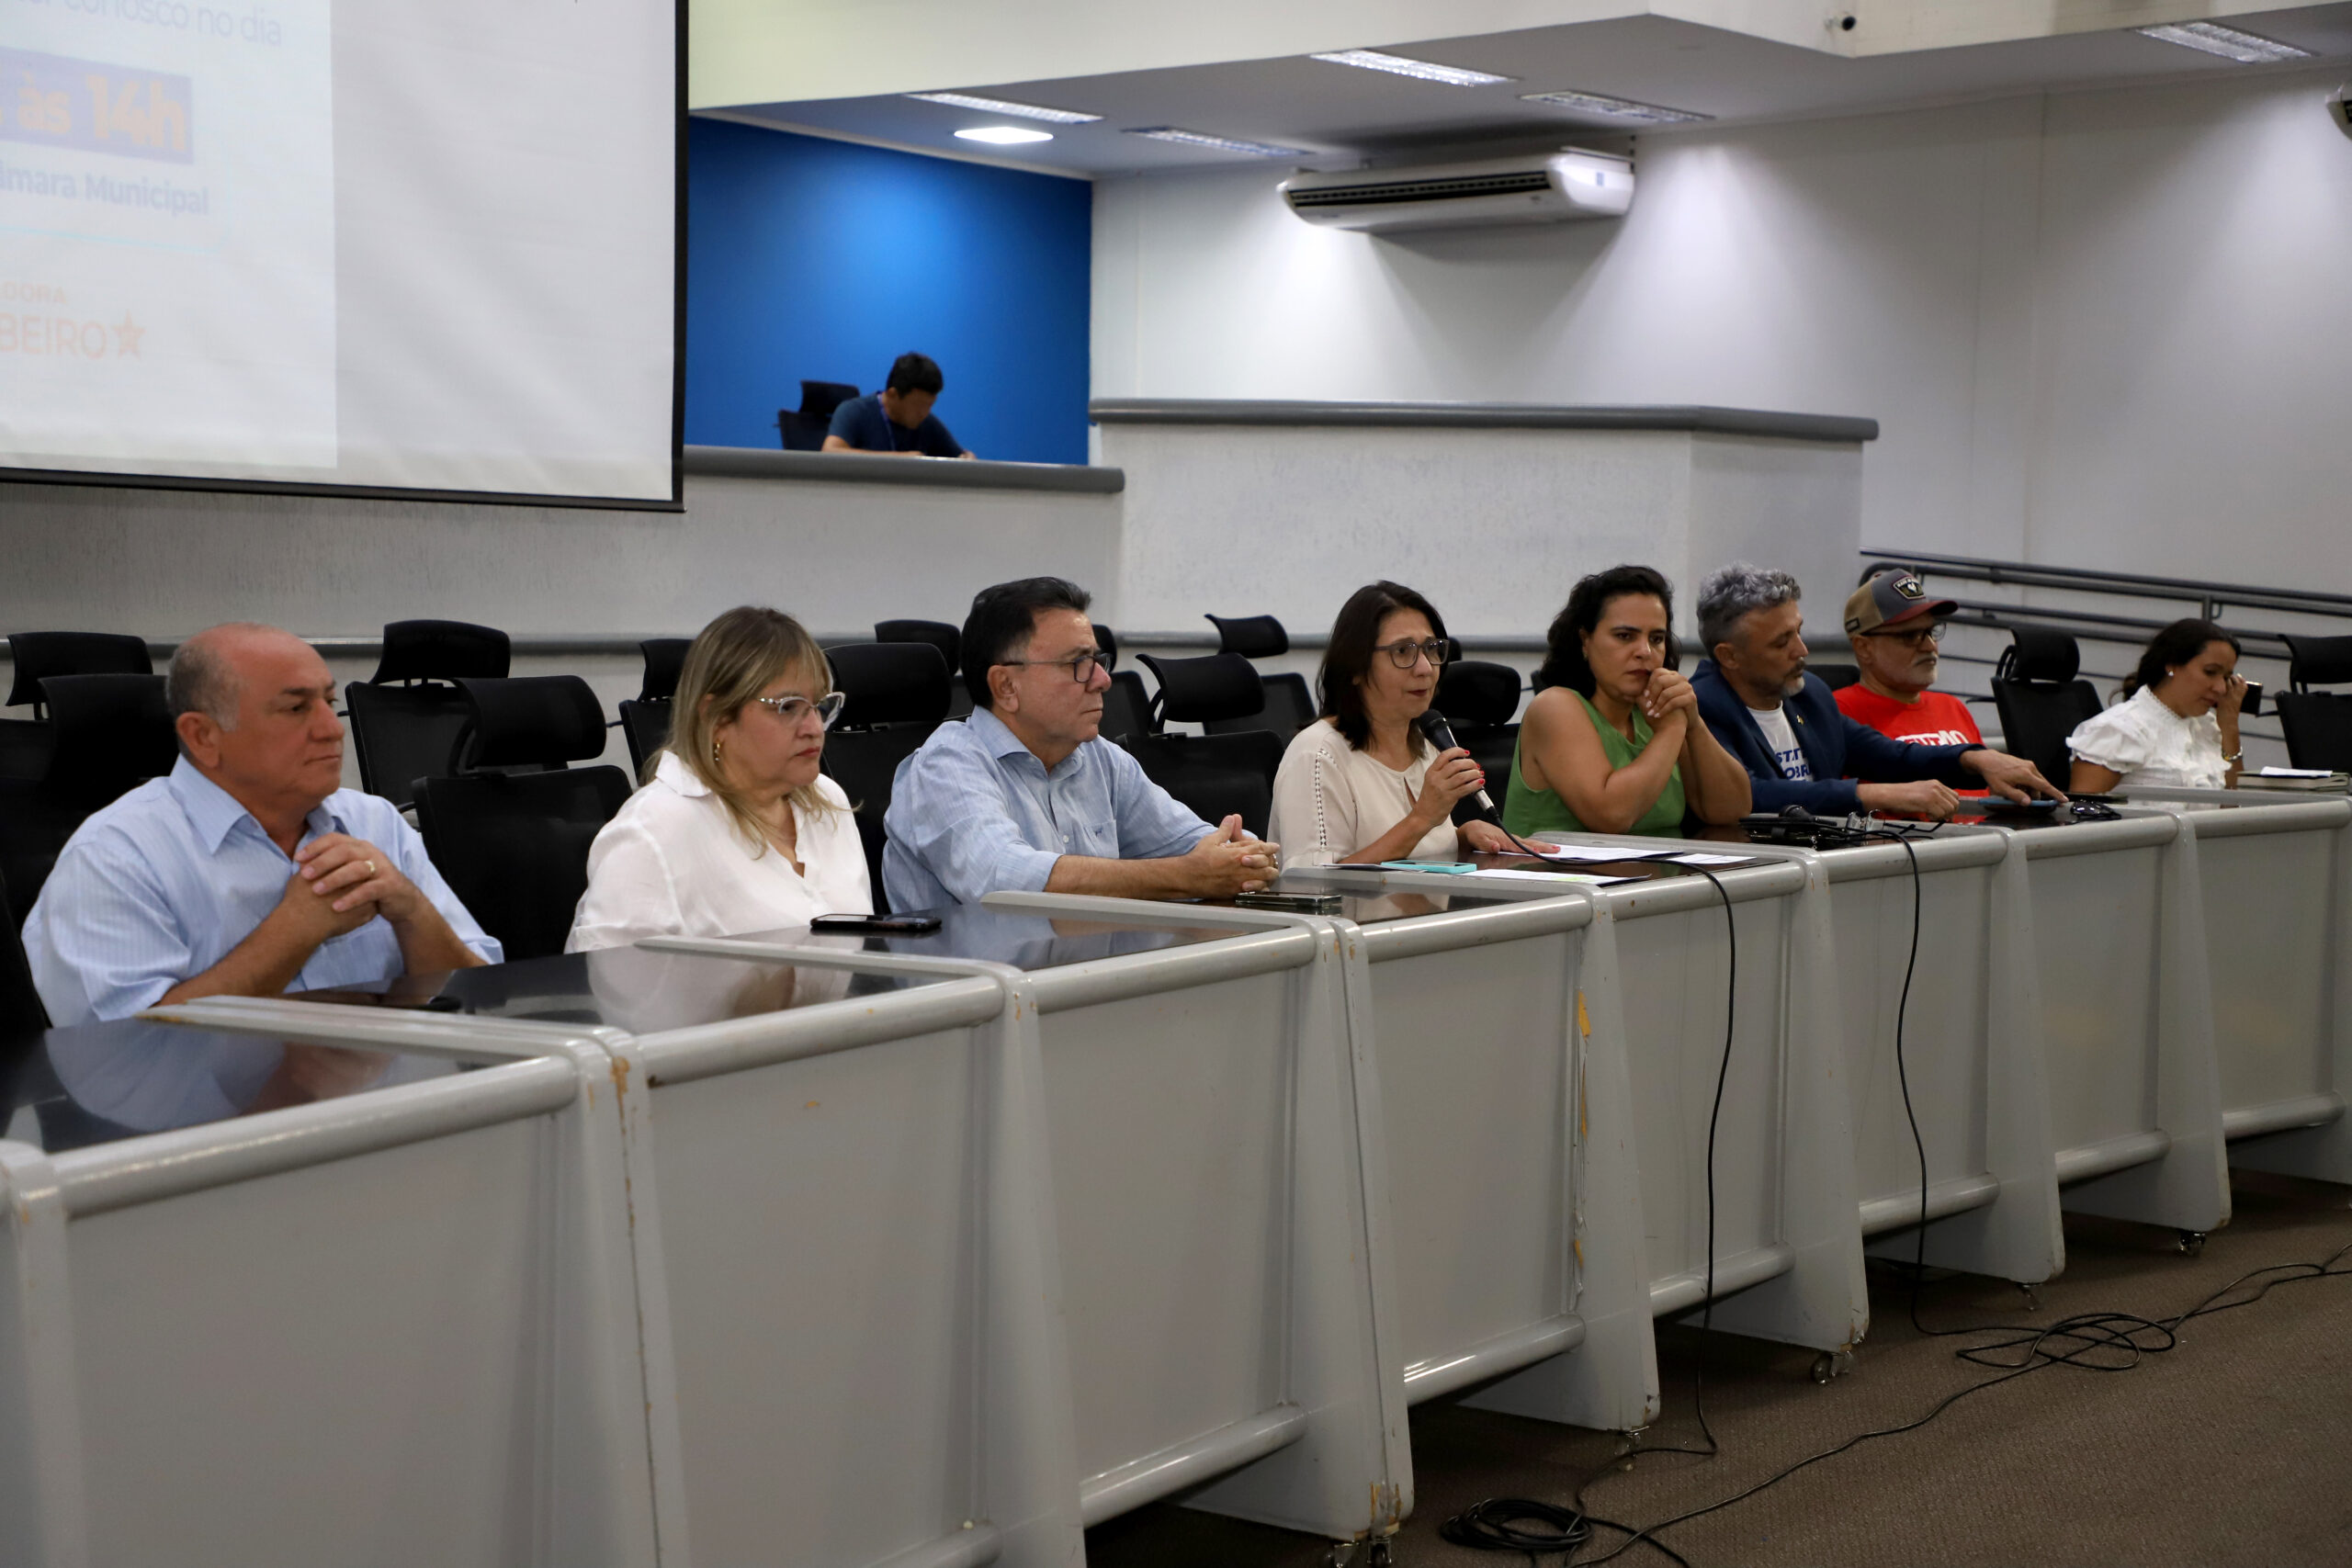 Vereador afirma que as ações do seu mandato são permanentes, inclusive nos  finais de semanas e feriados - Câmara Municipal de Campo Grande - MS